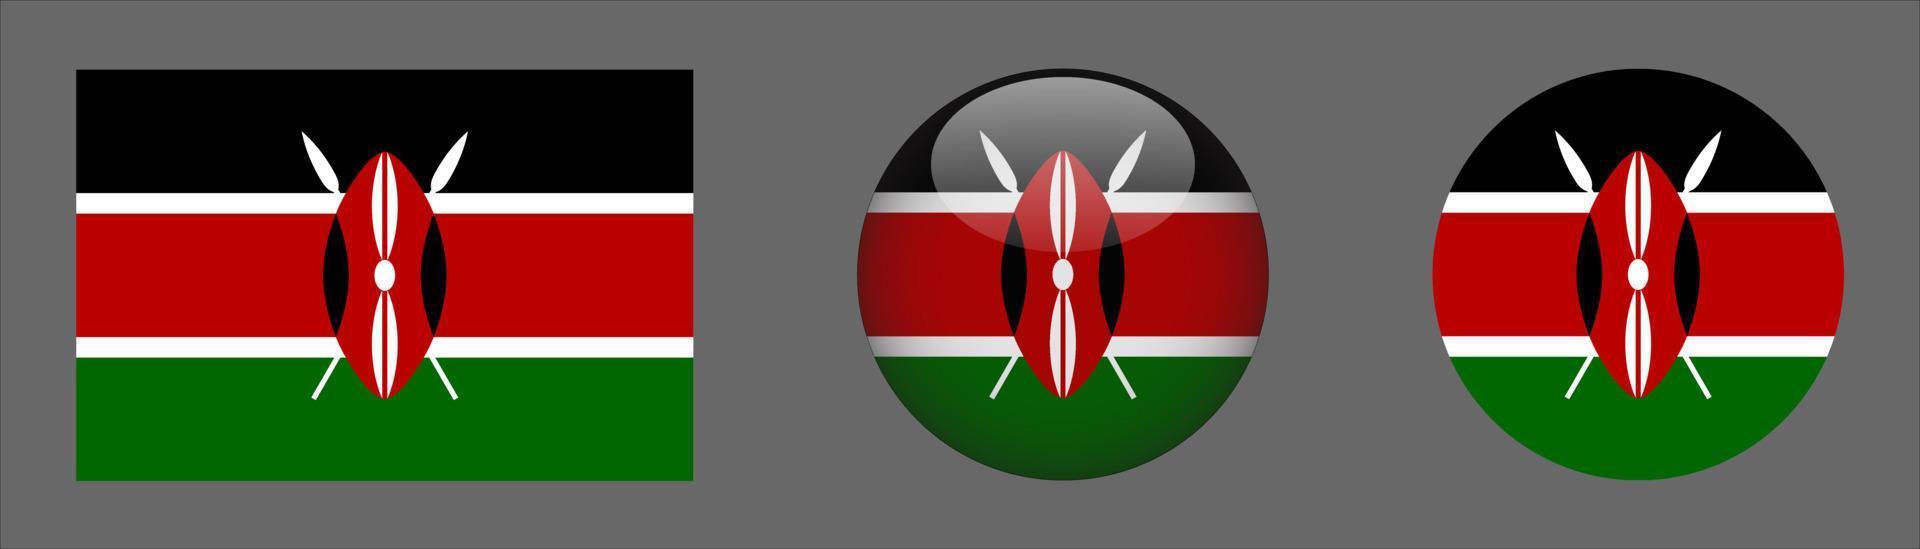 kenya flag set collection, rapporto di dimensioni originali, 3d arrotondato e piatto arrotondato vettore